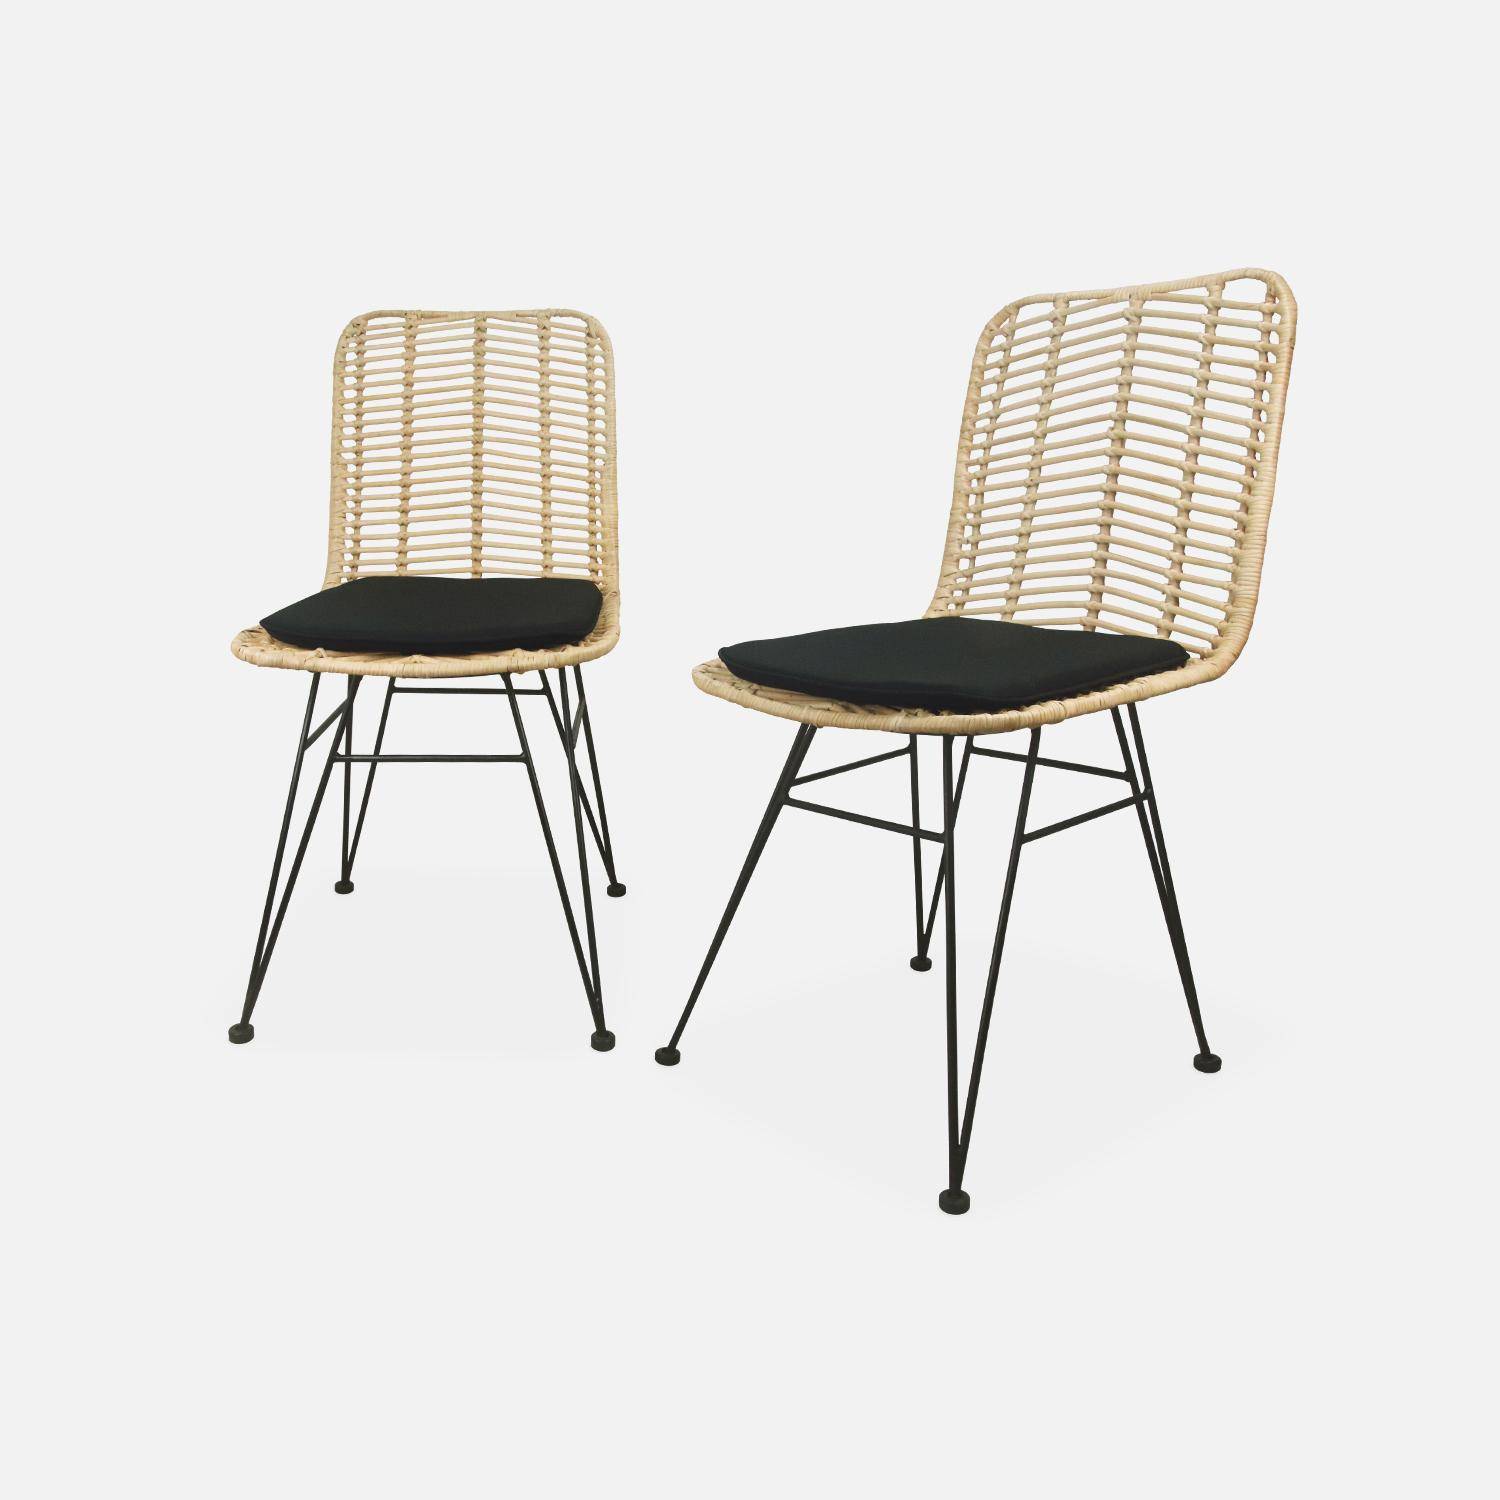 Dos sillas de ratán natural y metal, cojines negros - Cahya,sweeek,Photo3